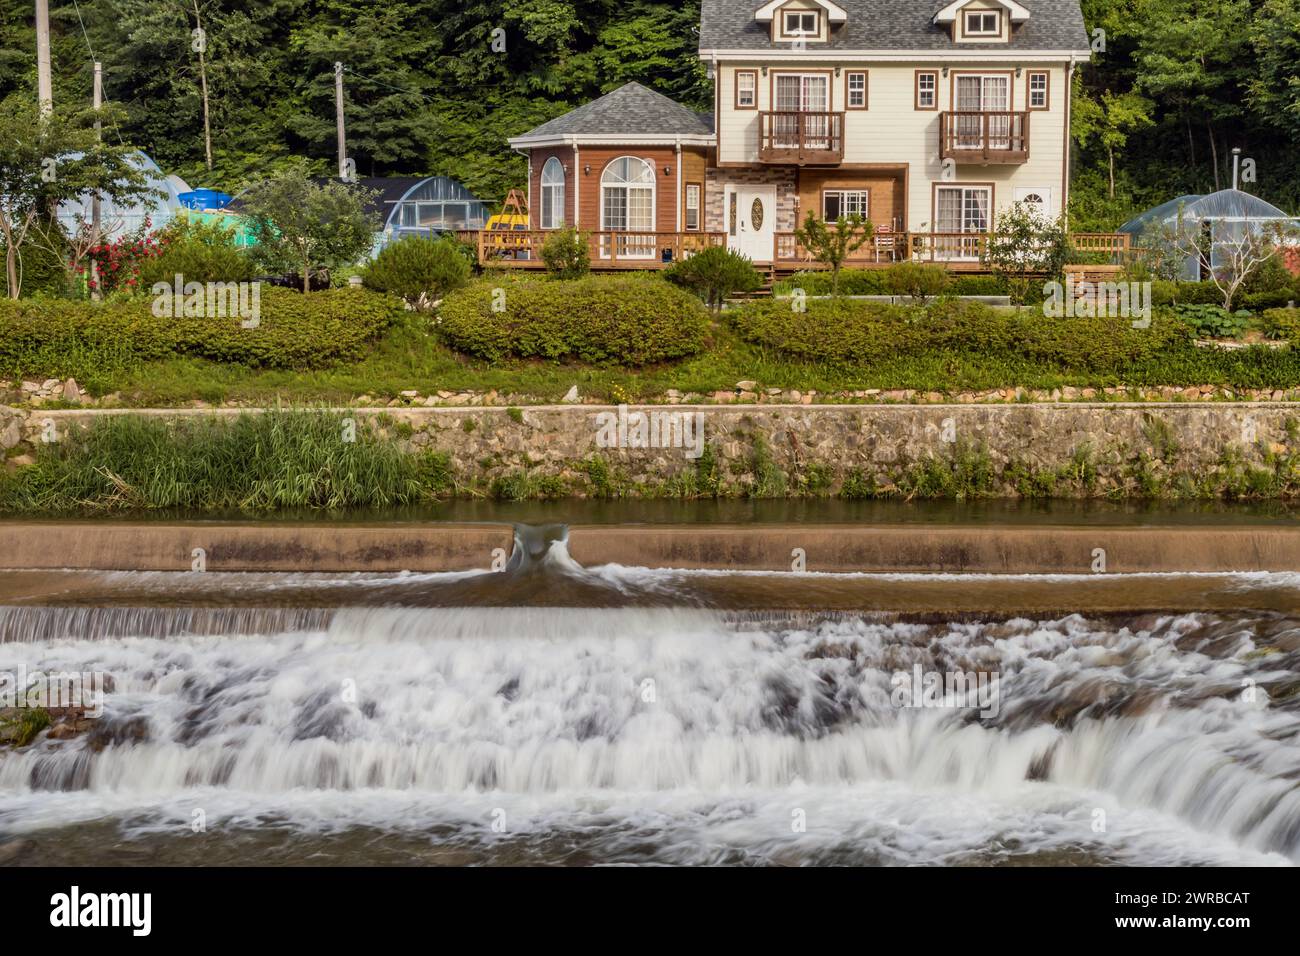 Les maisons élégantes donnent sur une petite cascade en cascade sur la rive de la rivière, en Corée du Sud Banque D'Images